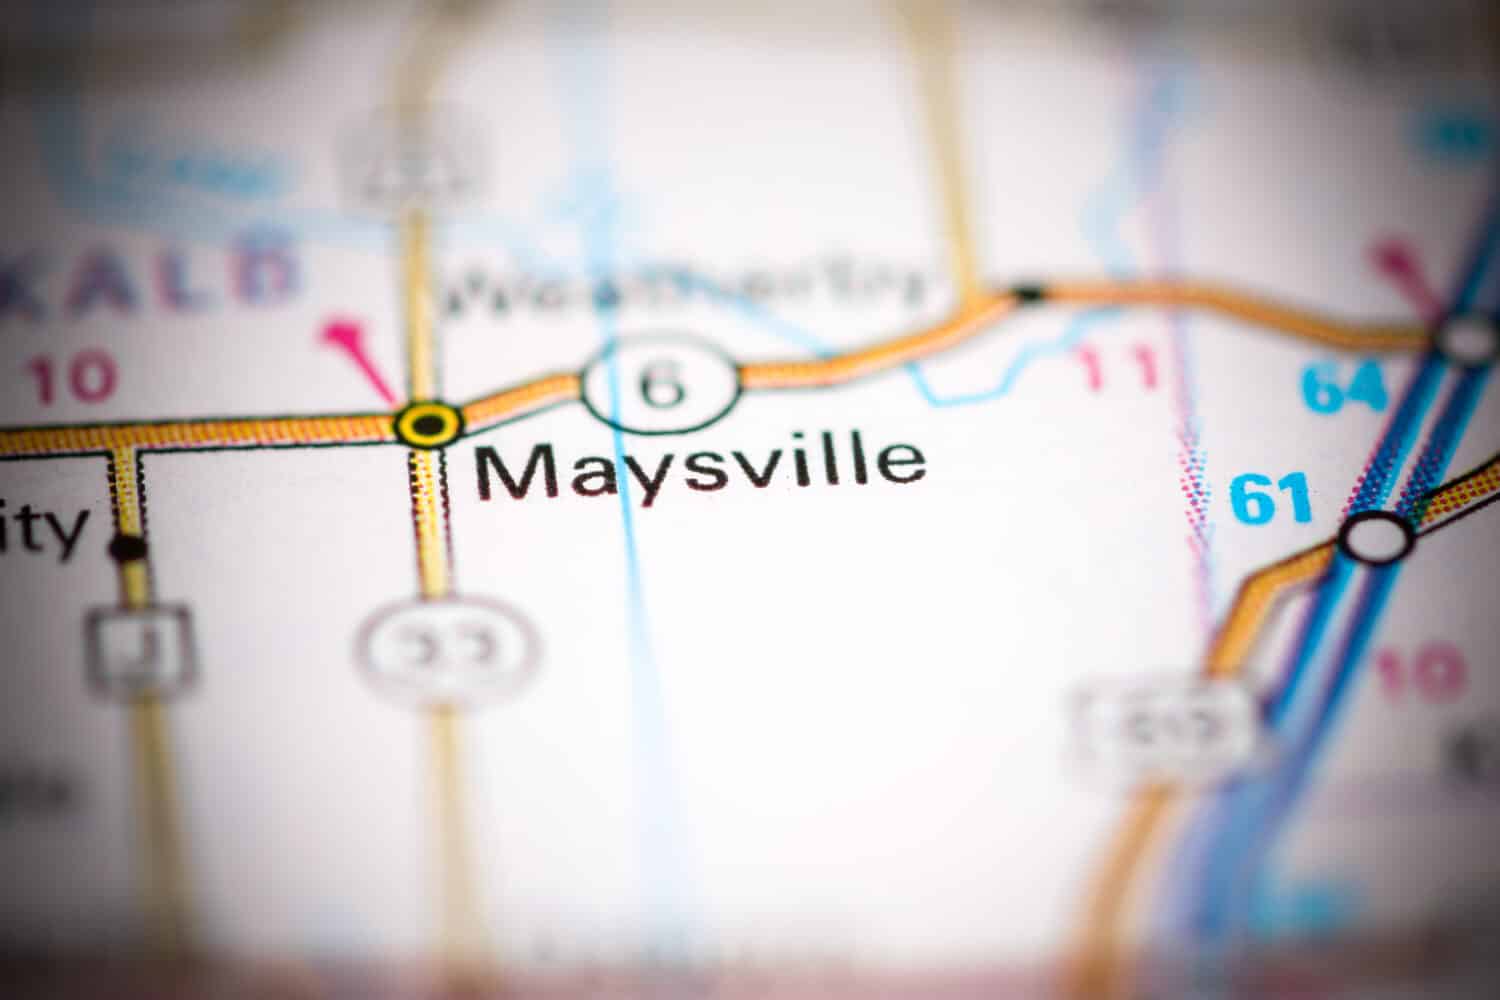 Maysville. Missouri. USA on a geography map